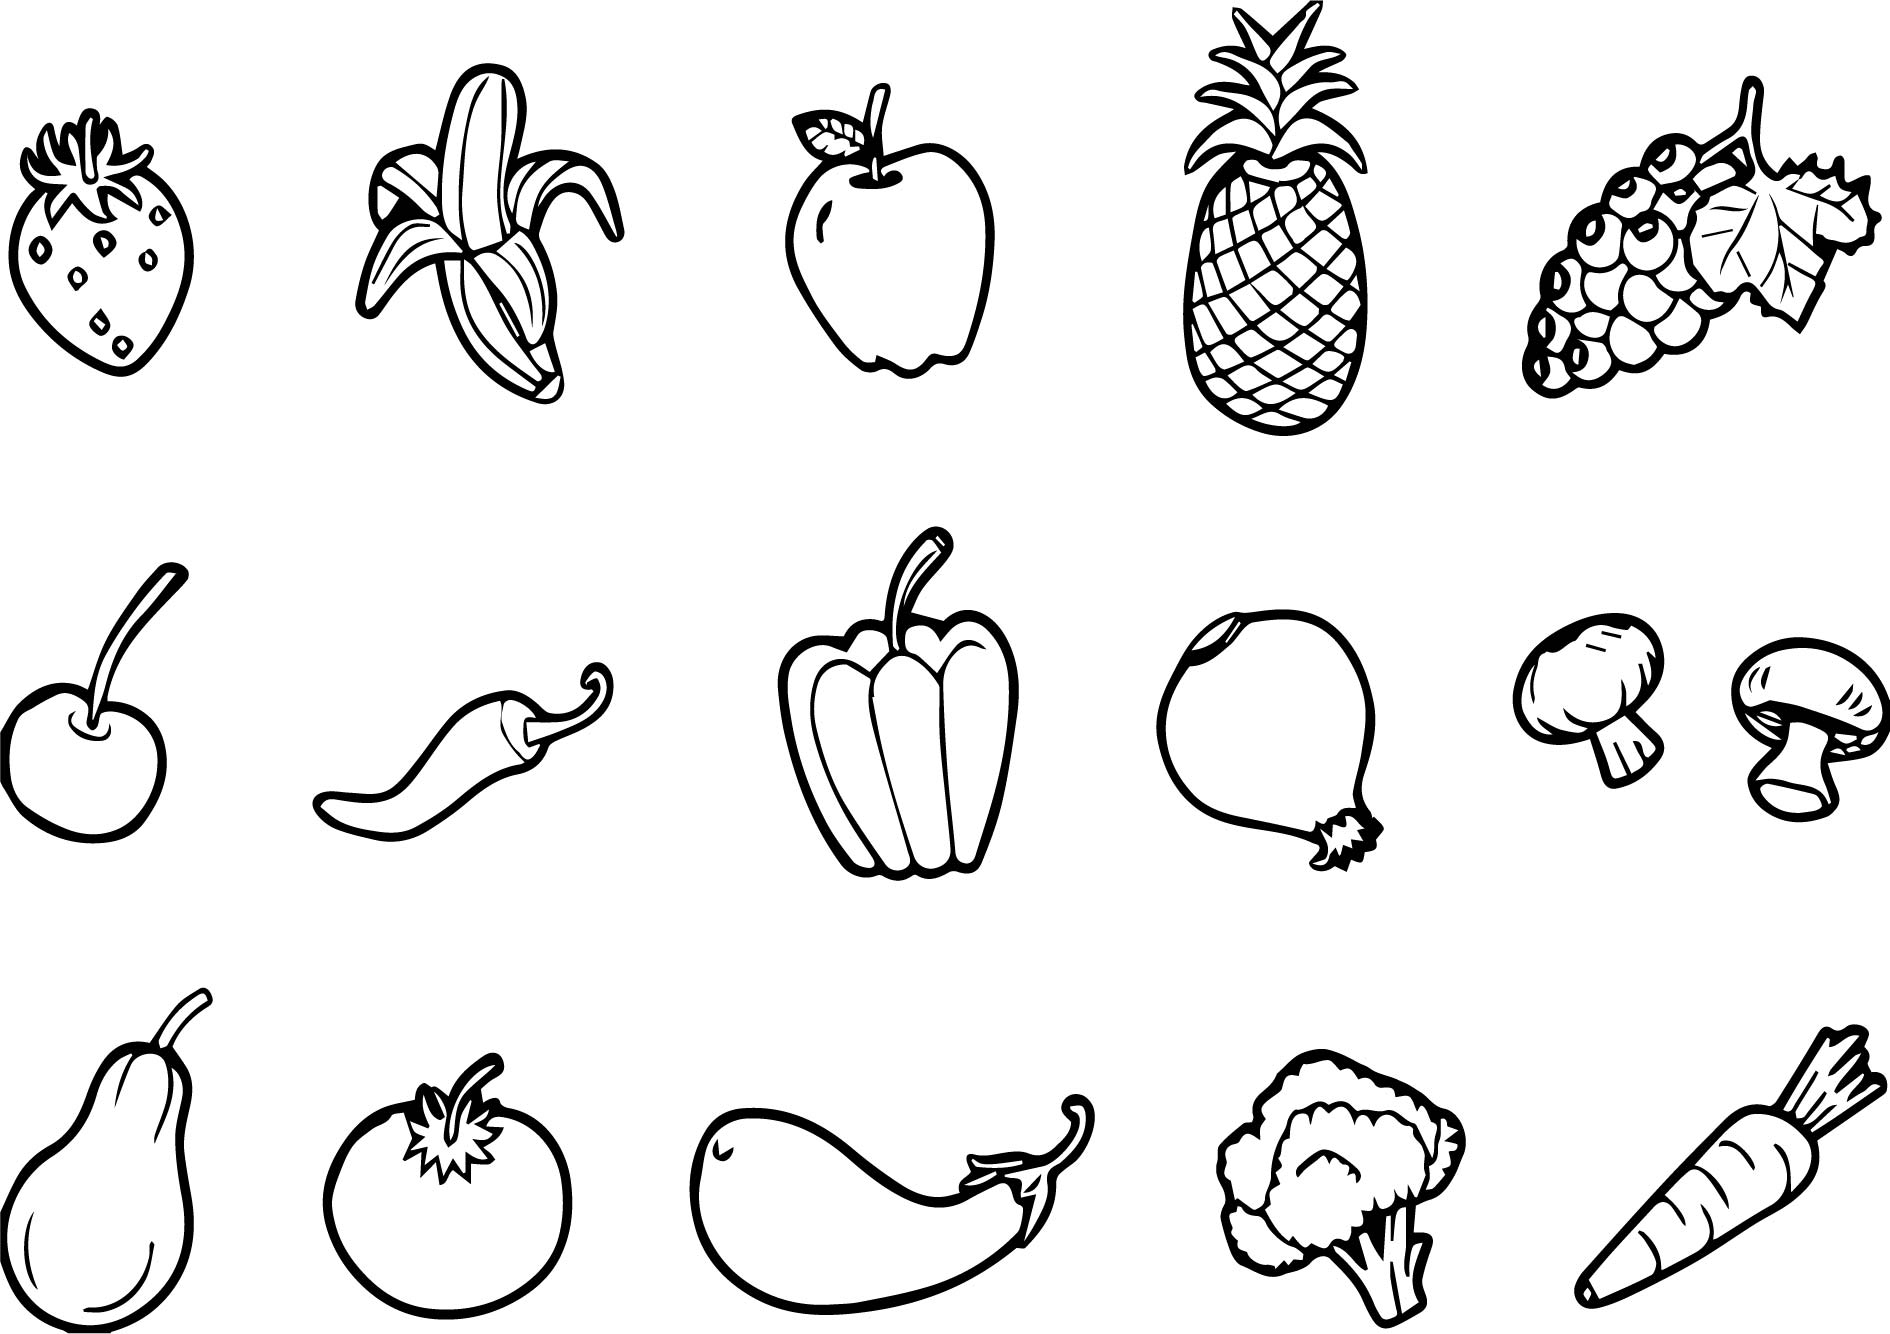 Dạy bé vẽ hình đơn giản - Các loại rau củ quả - hình ảnh 1